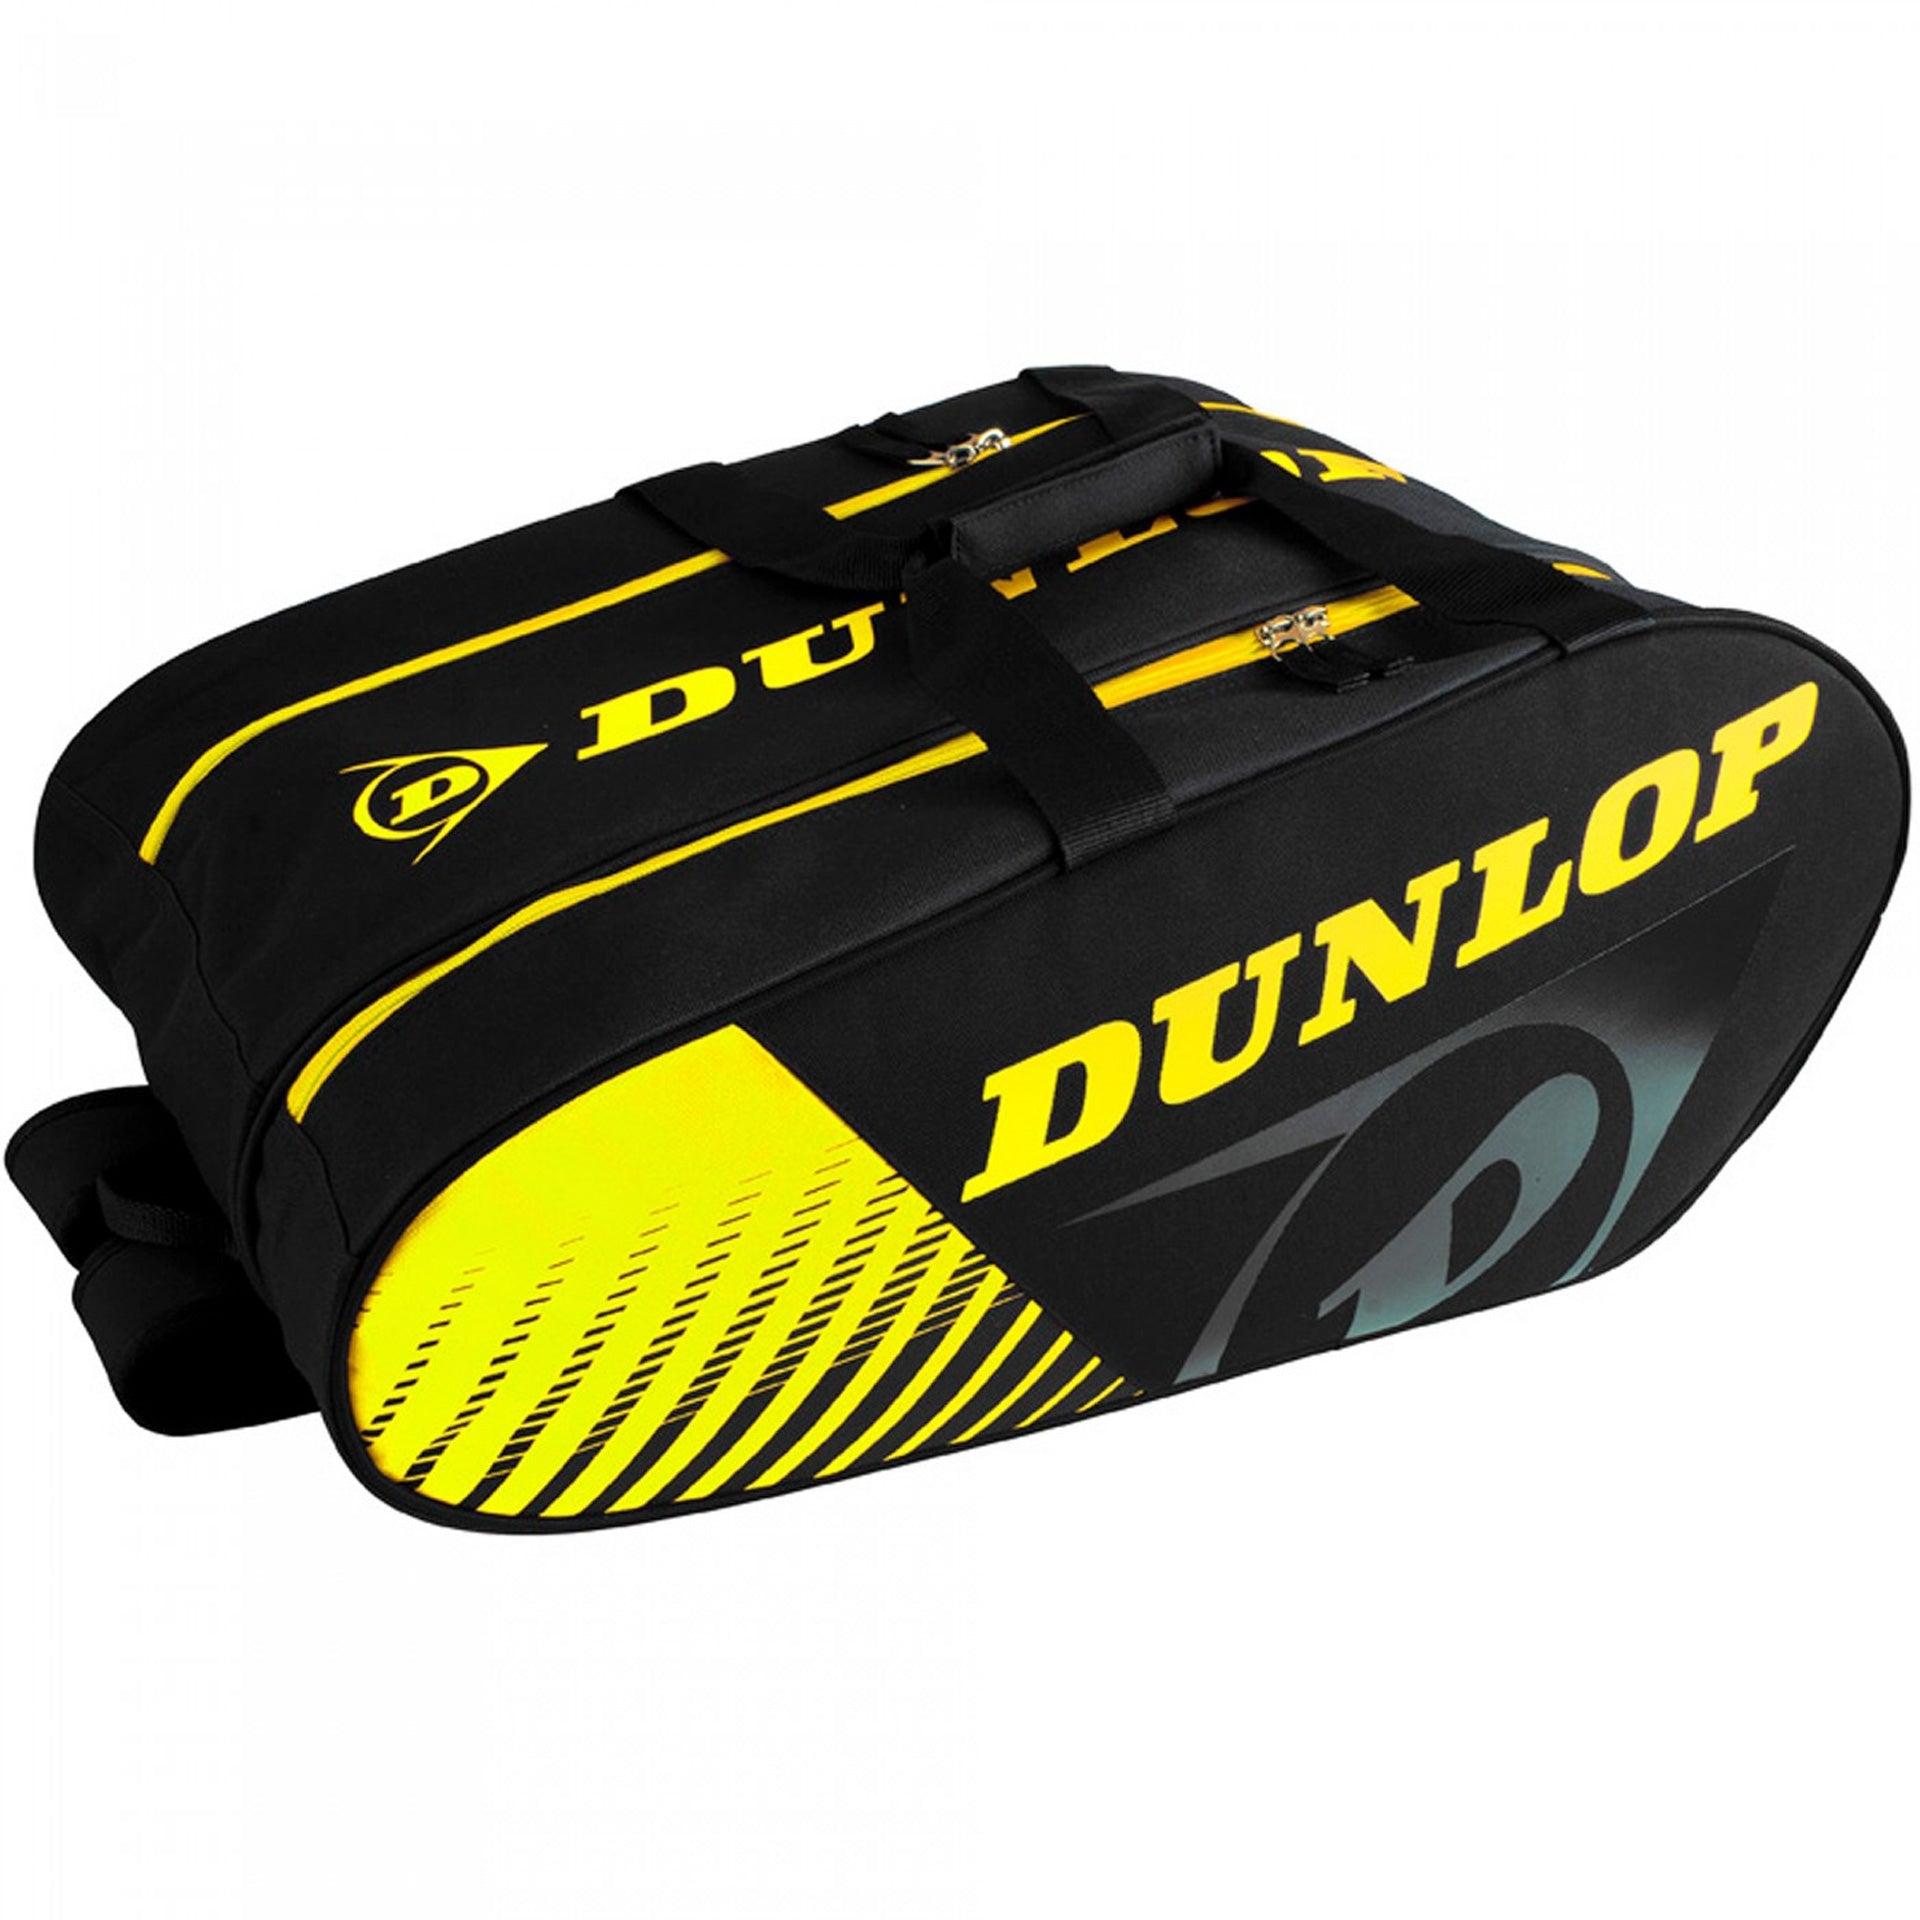 Paletero Dunlop Play Black/yellow 1